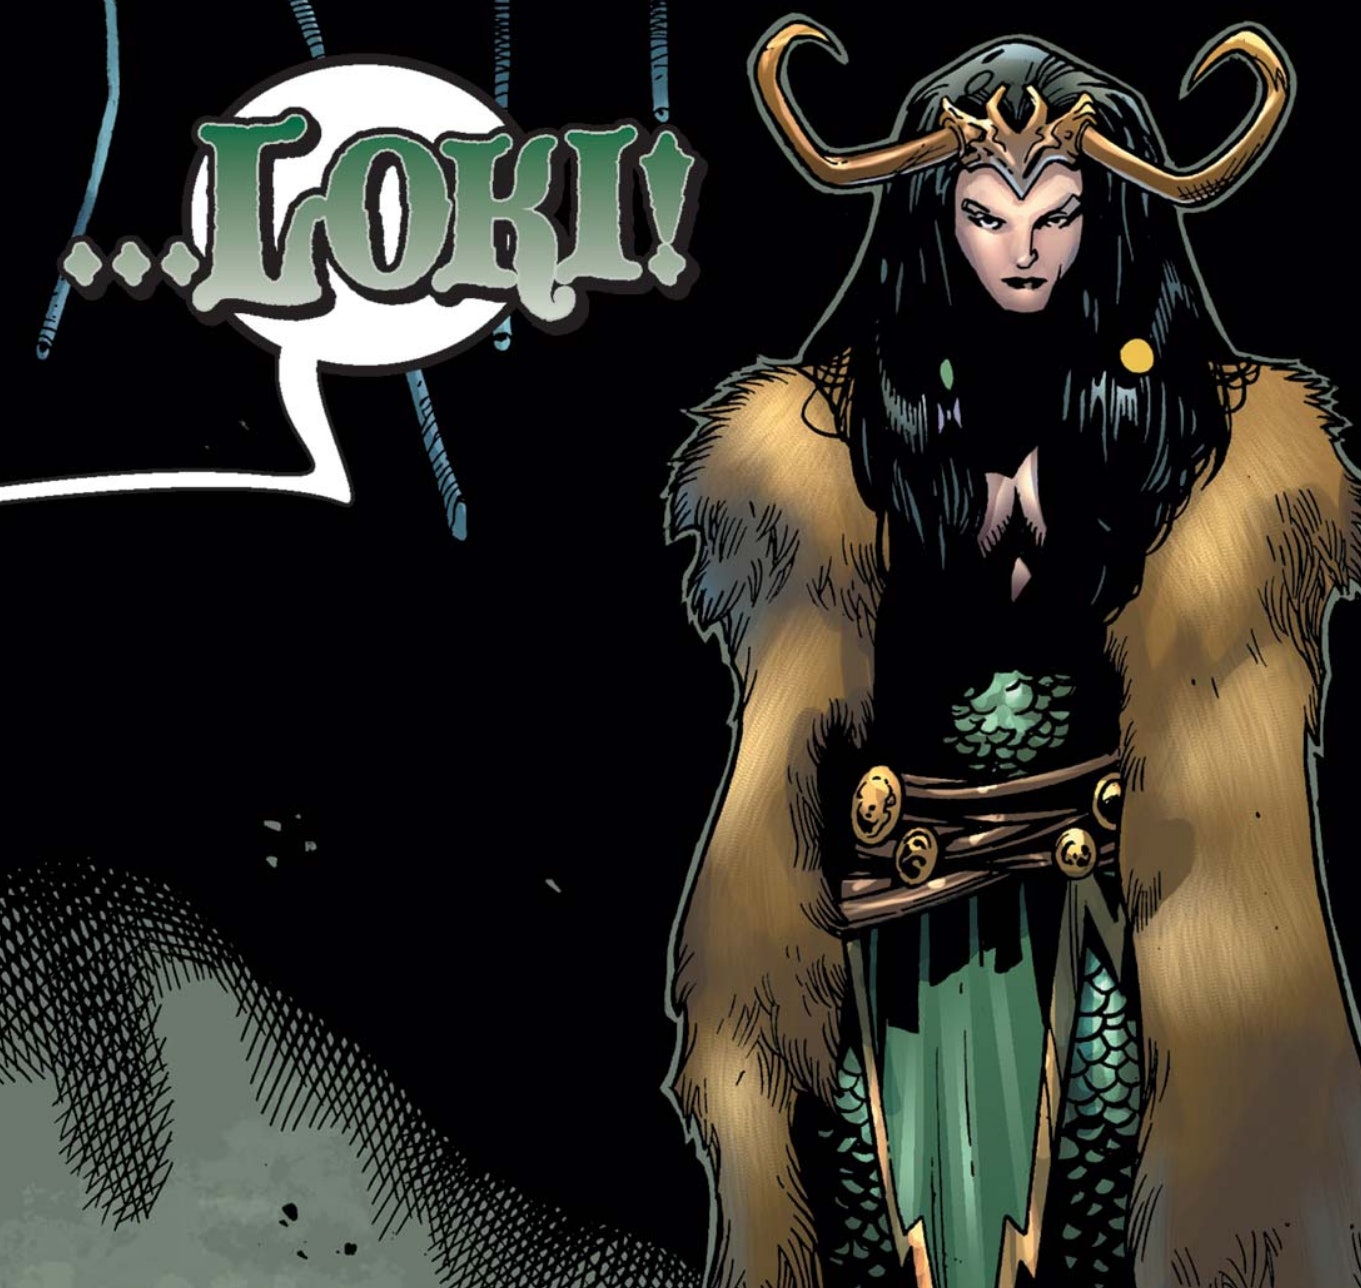 Una historia de amor variante de Loki y Lady Loki podría suceder en la serie de Disney